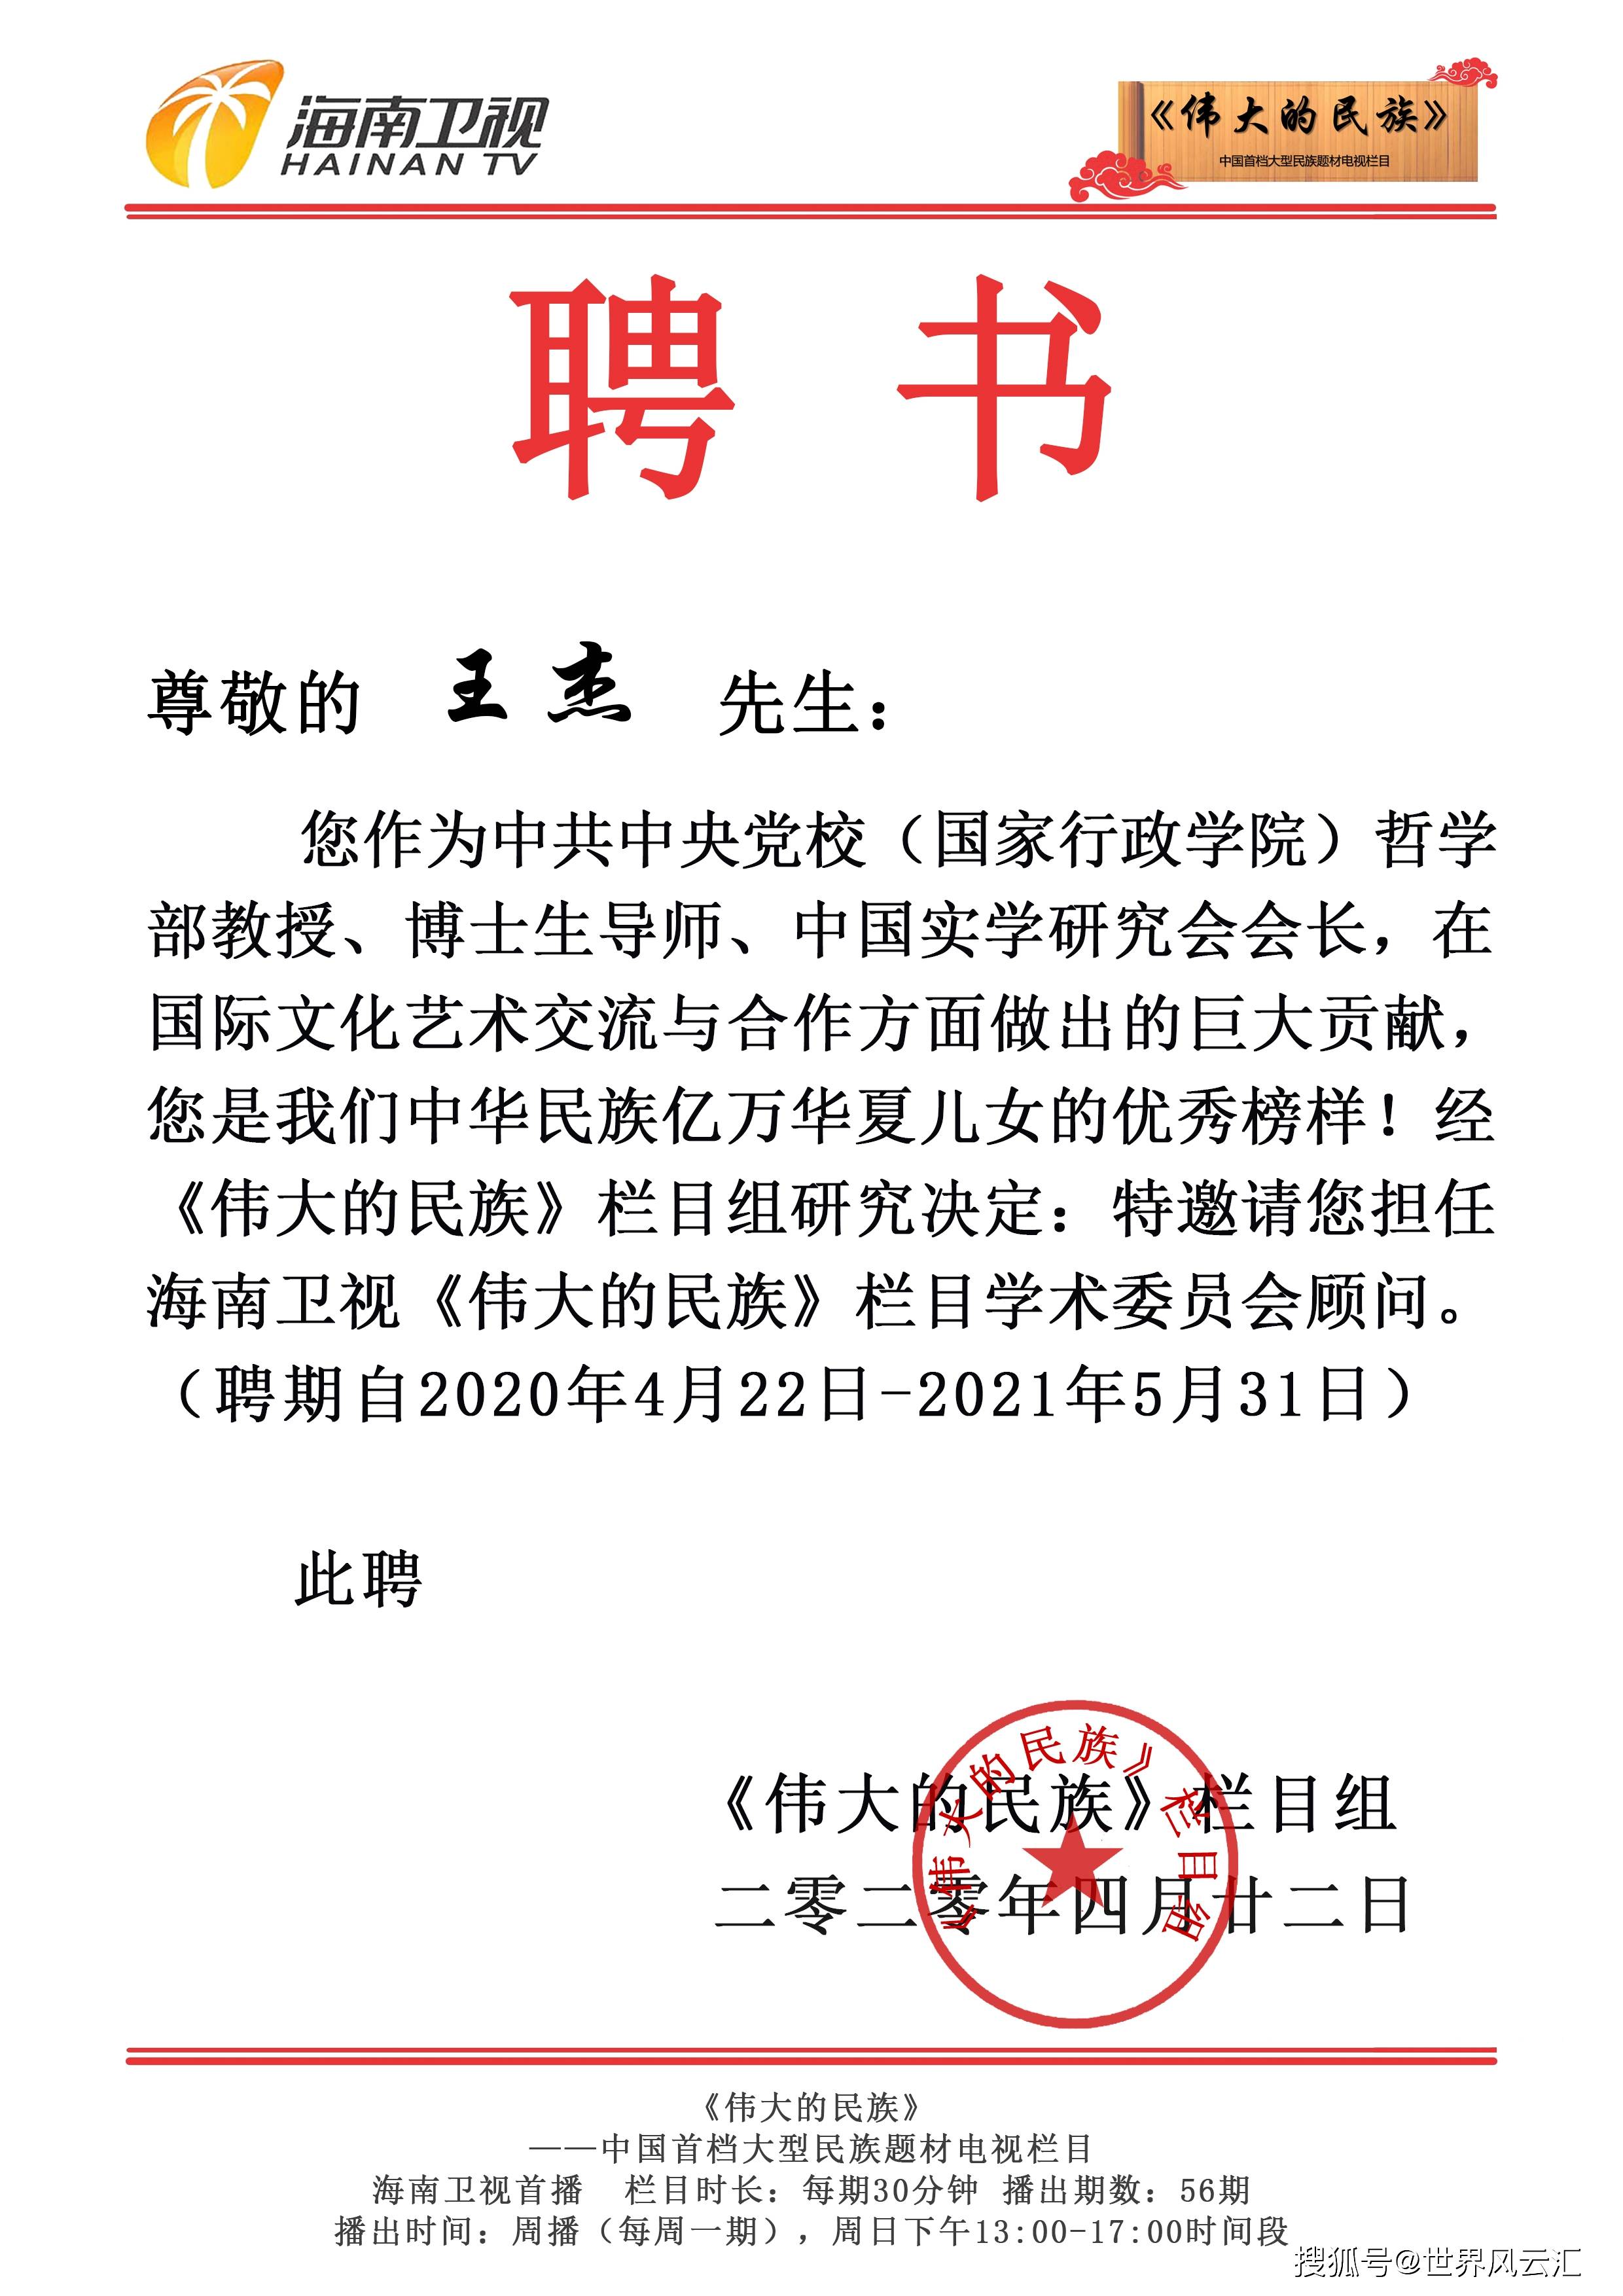 中共中央党校王杰教授受聘担任《伟大的民族》栏目学术委员会顾问